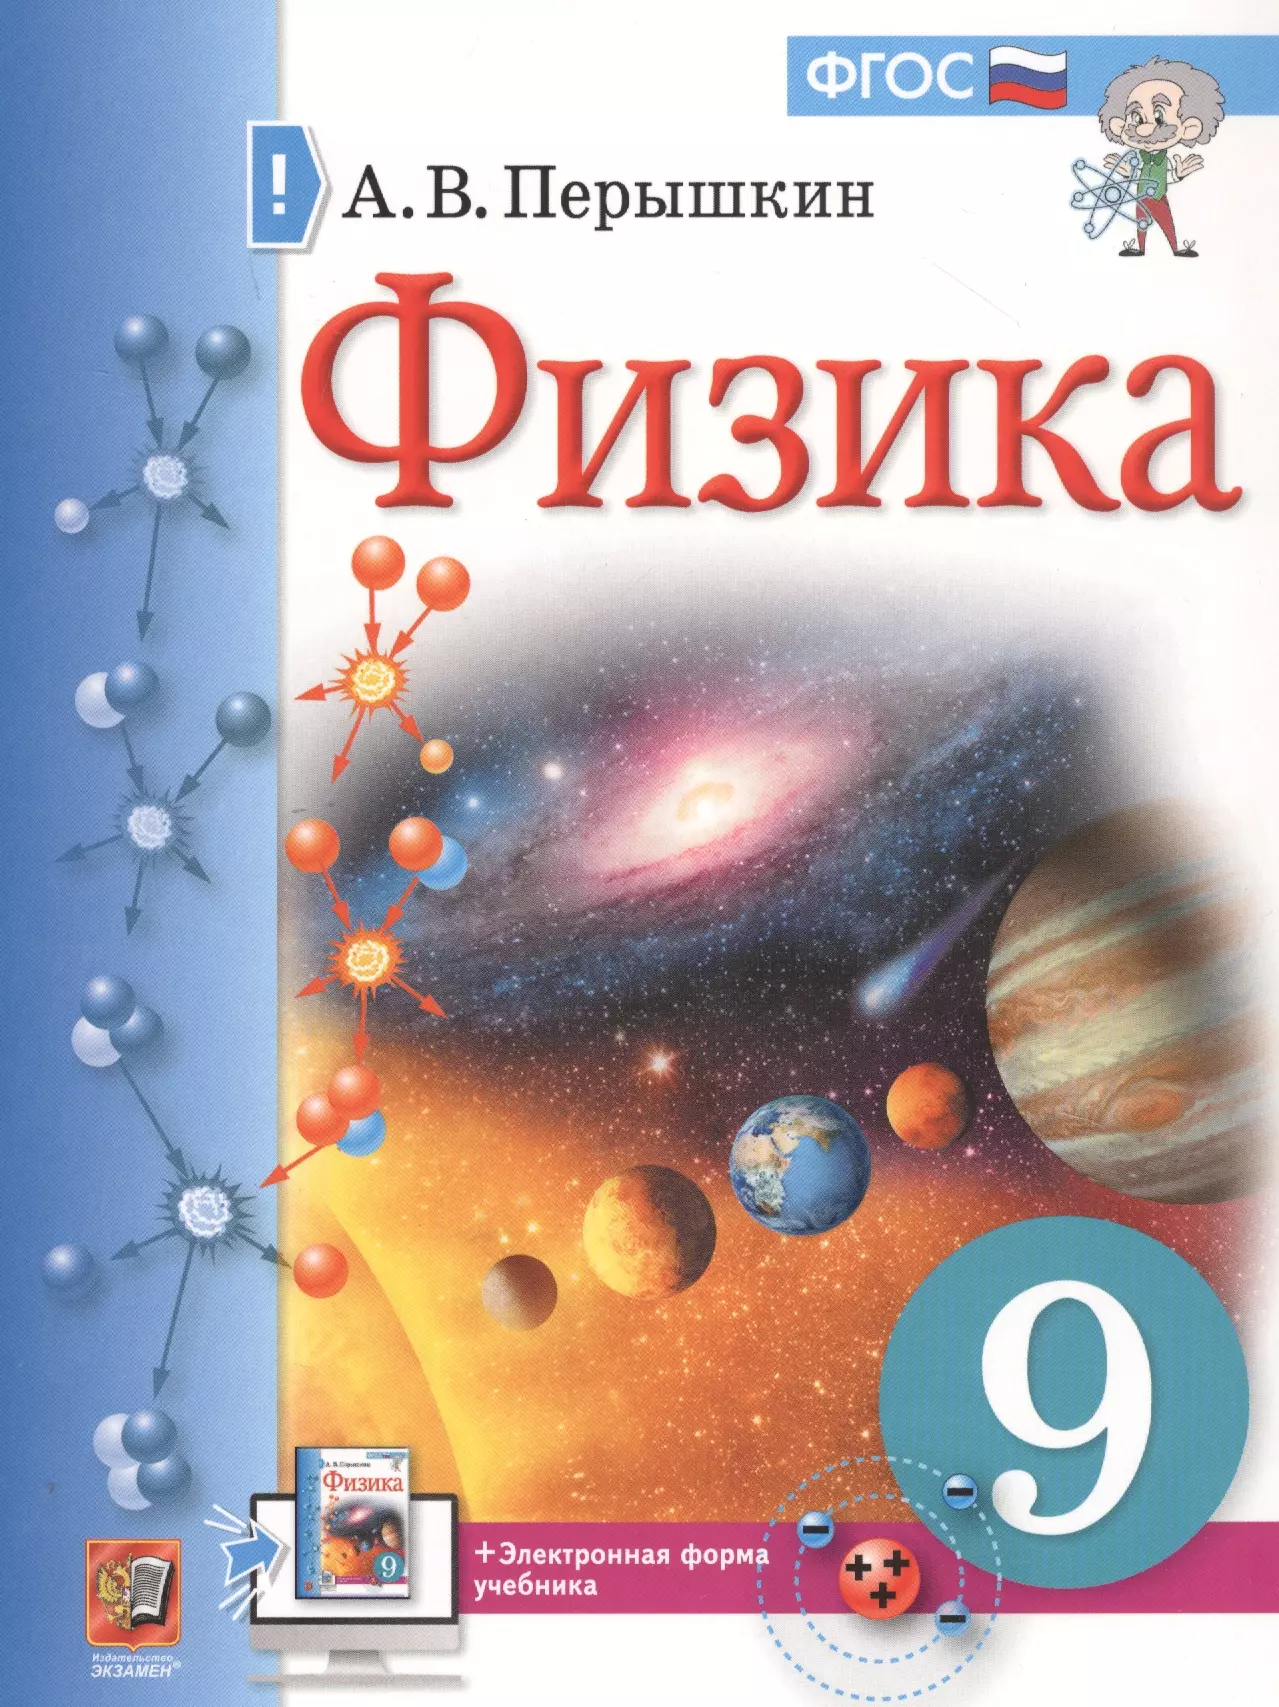 Физика. 9 класс. Учебник + электронная форма учебника перышкин александр васильевич физика 7 класс учебник электронная форма учебника